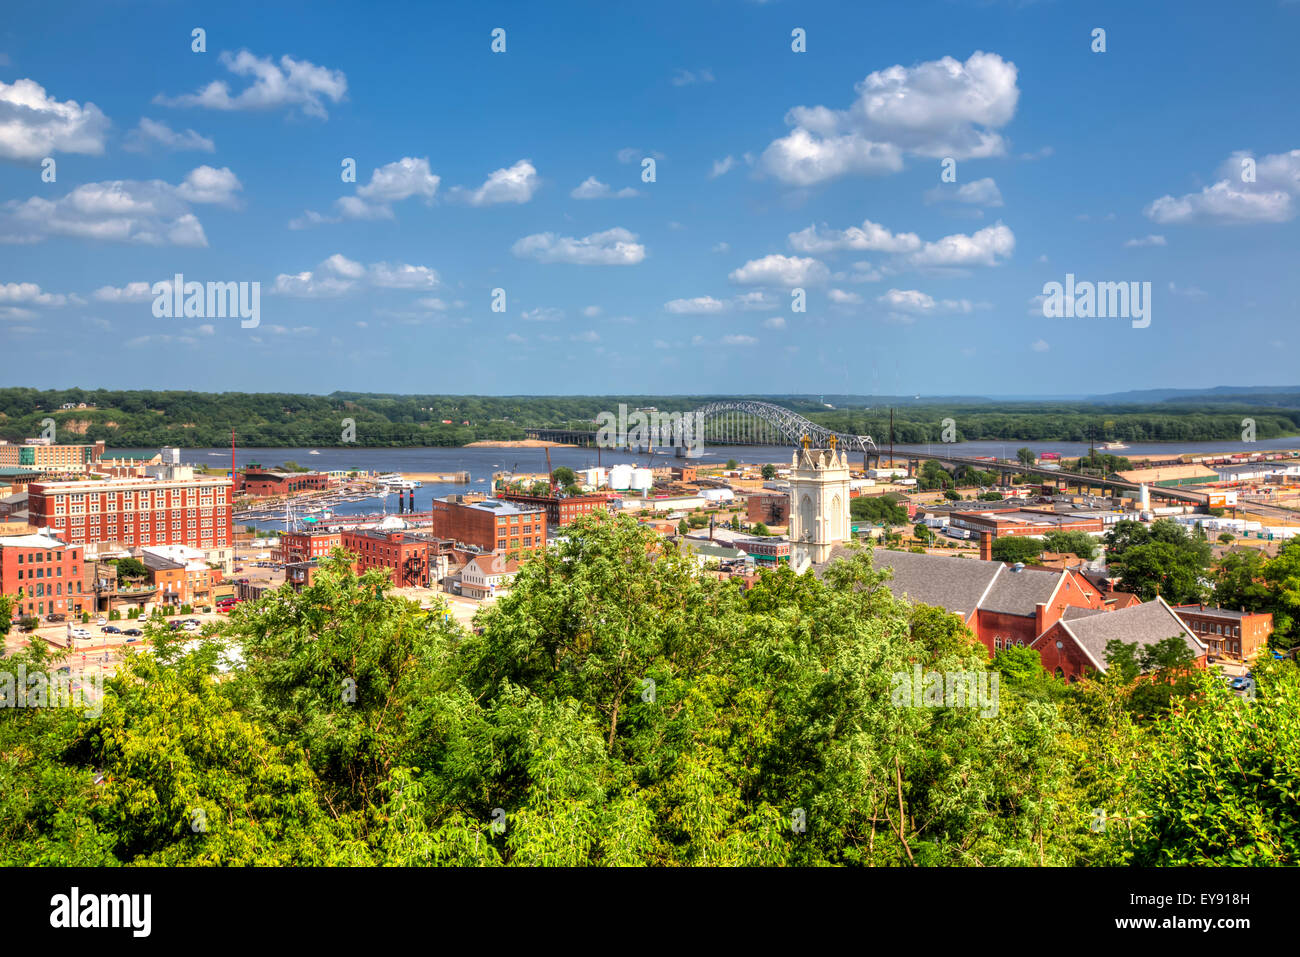 Vue panoramique du centre-ville de Dubuque et le fleuve Mississippi à partir de l'ascenseur ; Place Fenelon Dubuque, Iowa, USA Banque D'Images